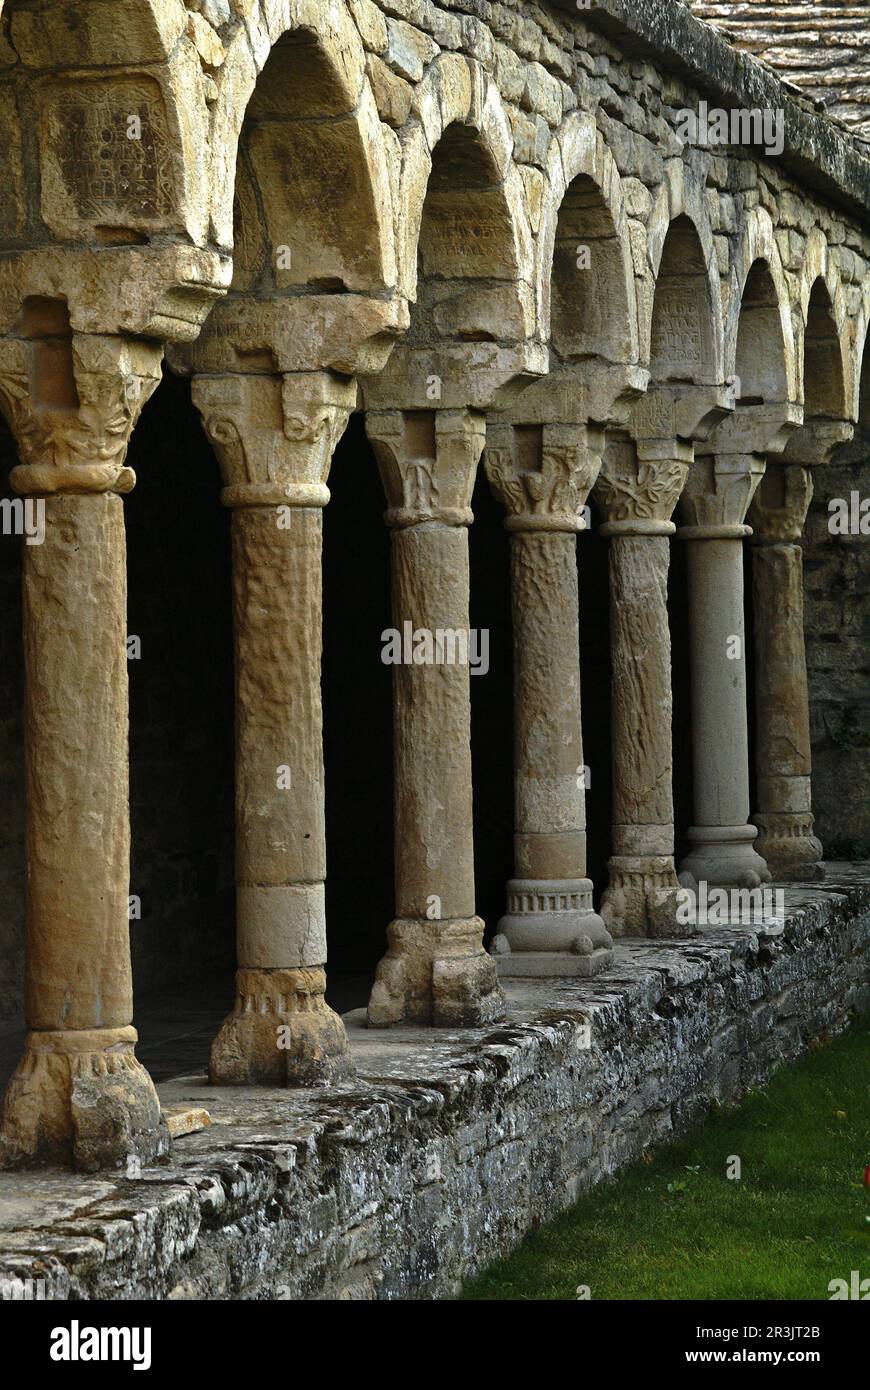 Claustro de la catedral romanica de San Vicente(s.XI). Roda de Isábena.Aragón. España. Stock Photo